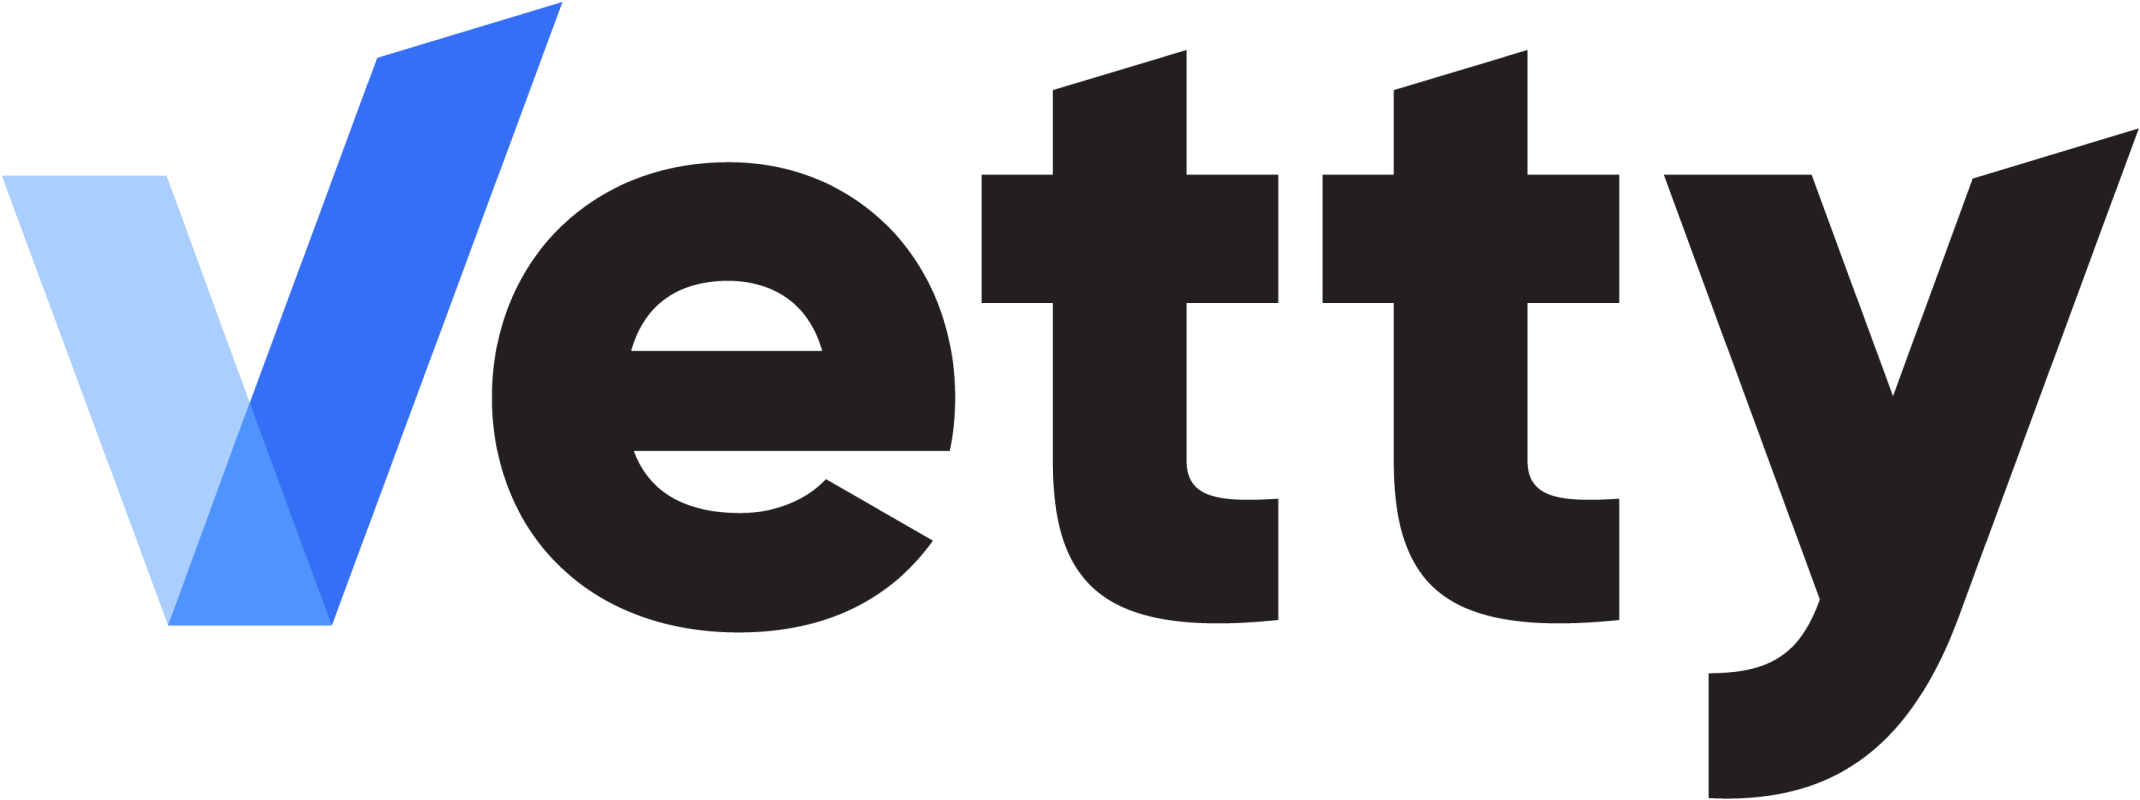 Vetty logo